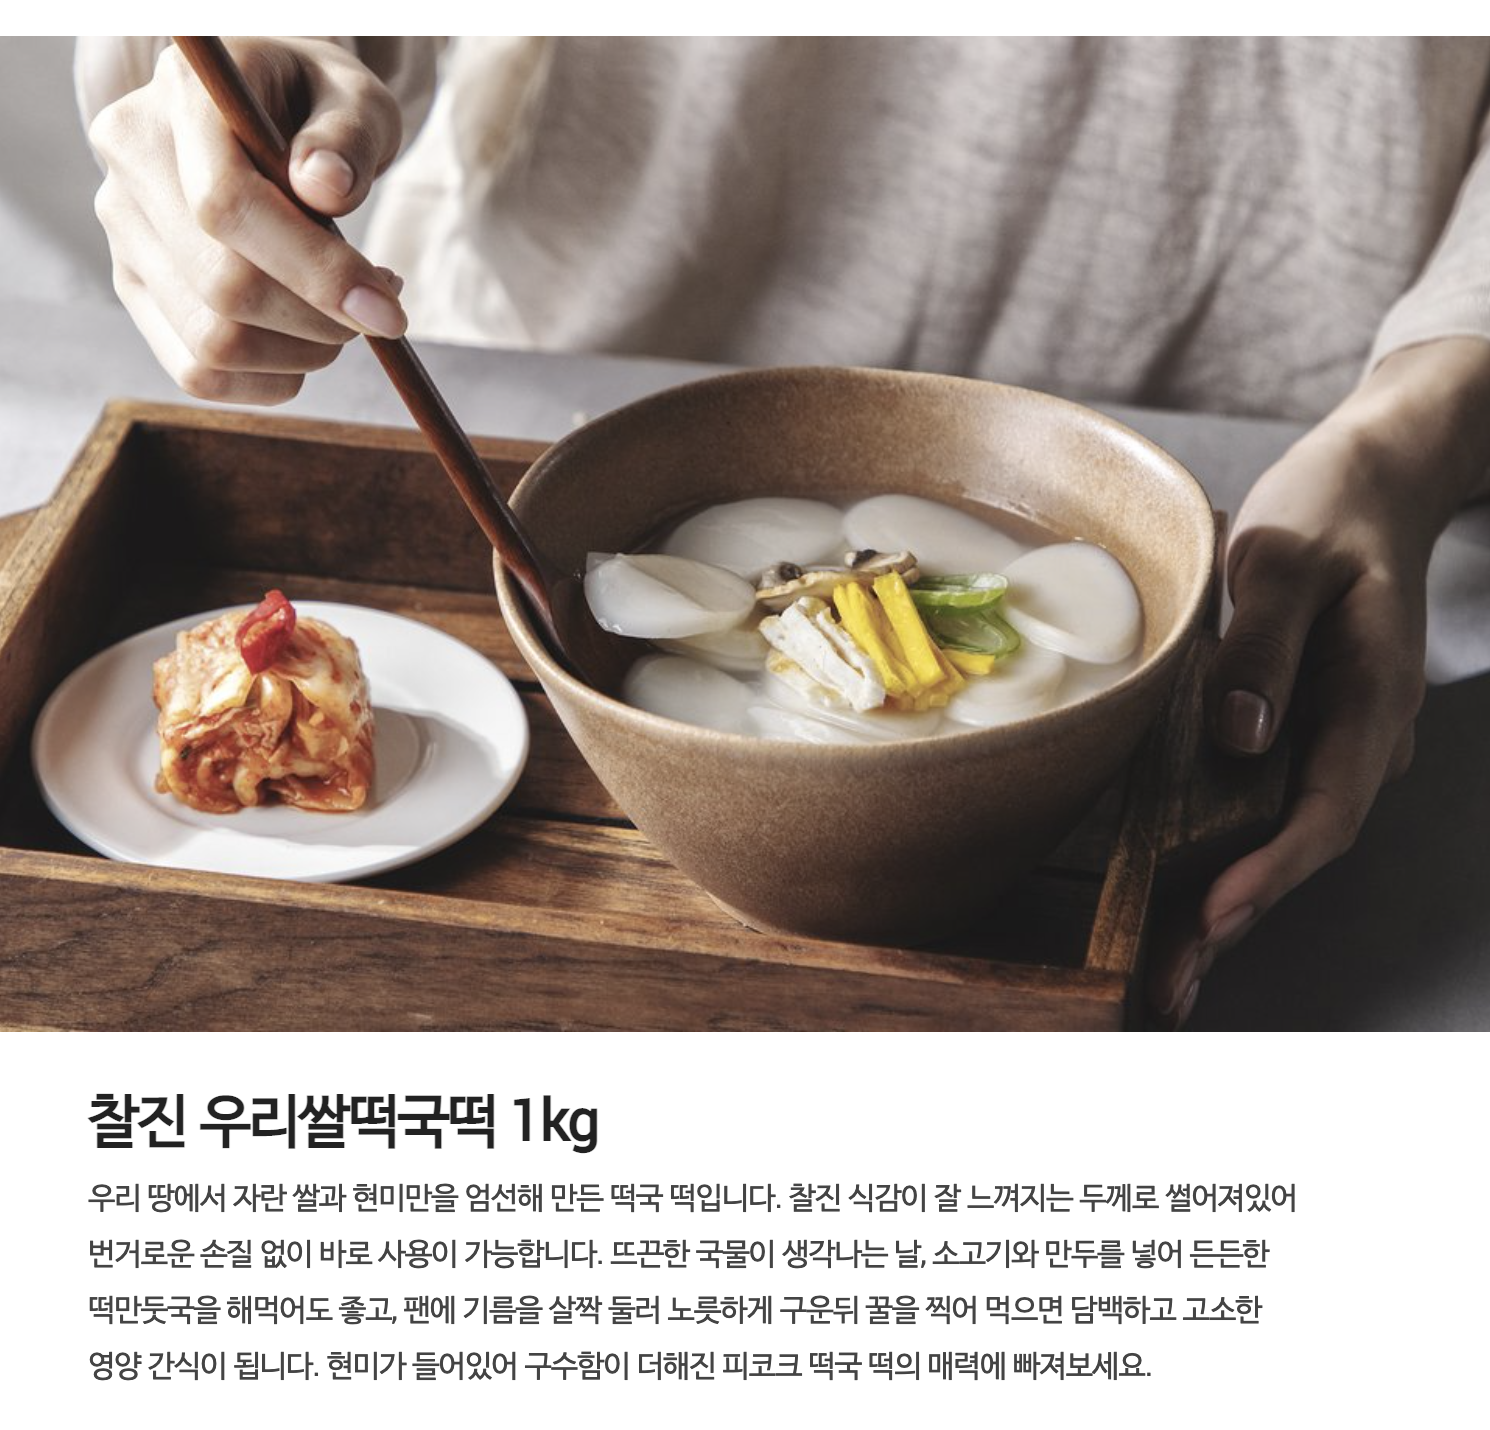 韓國食品-[Peacock] 高級韓國米製湯用年糕 1kg